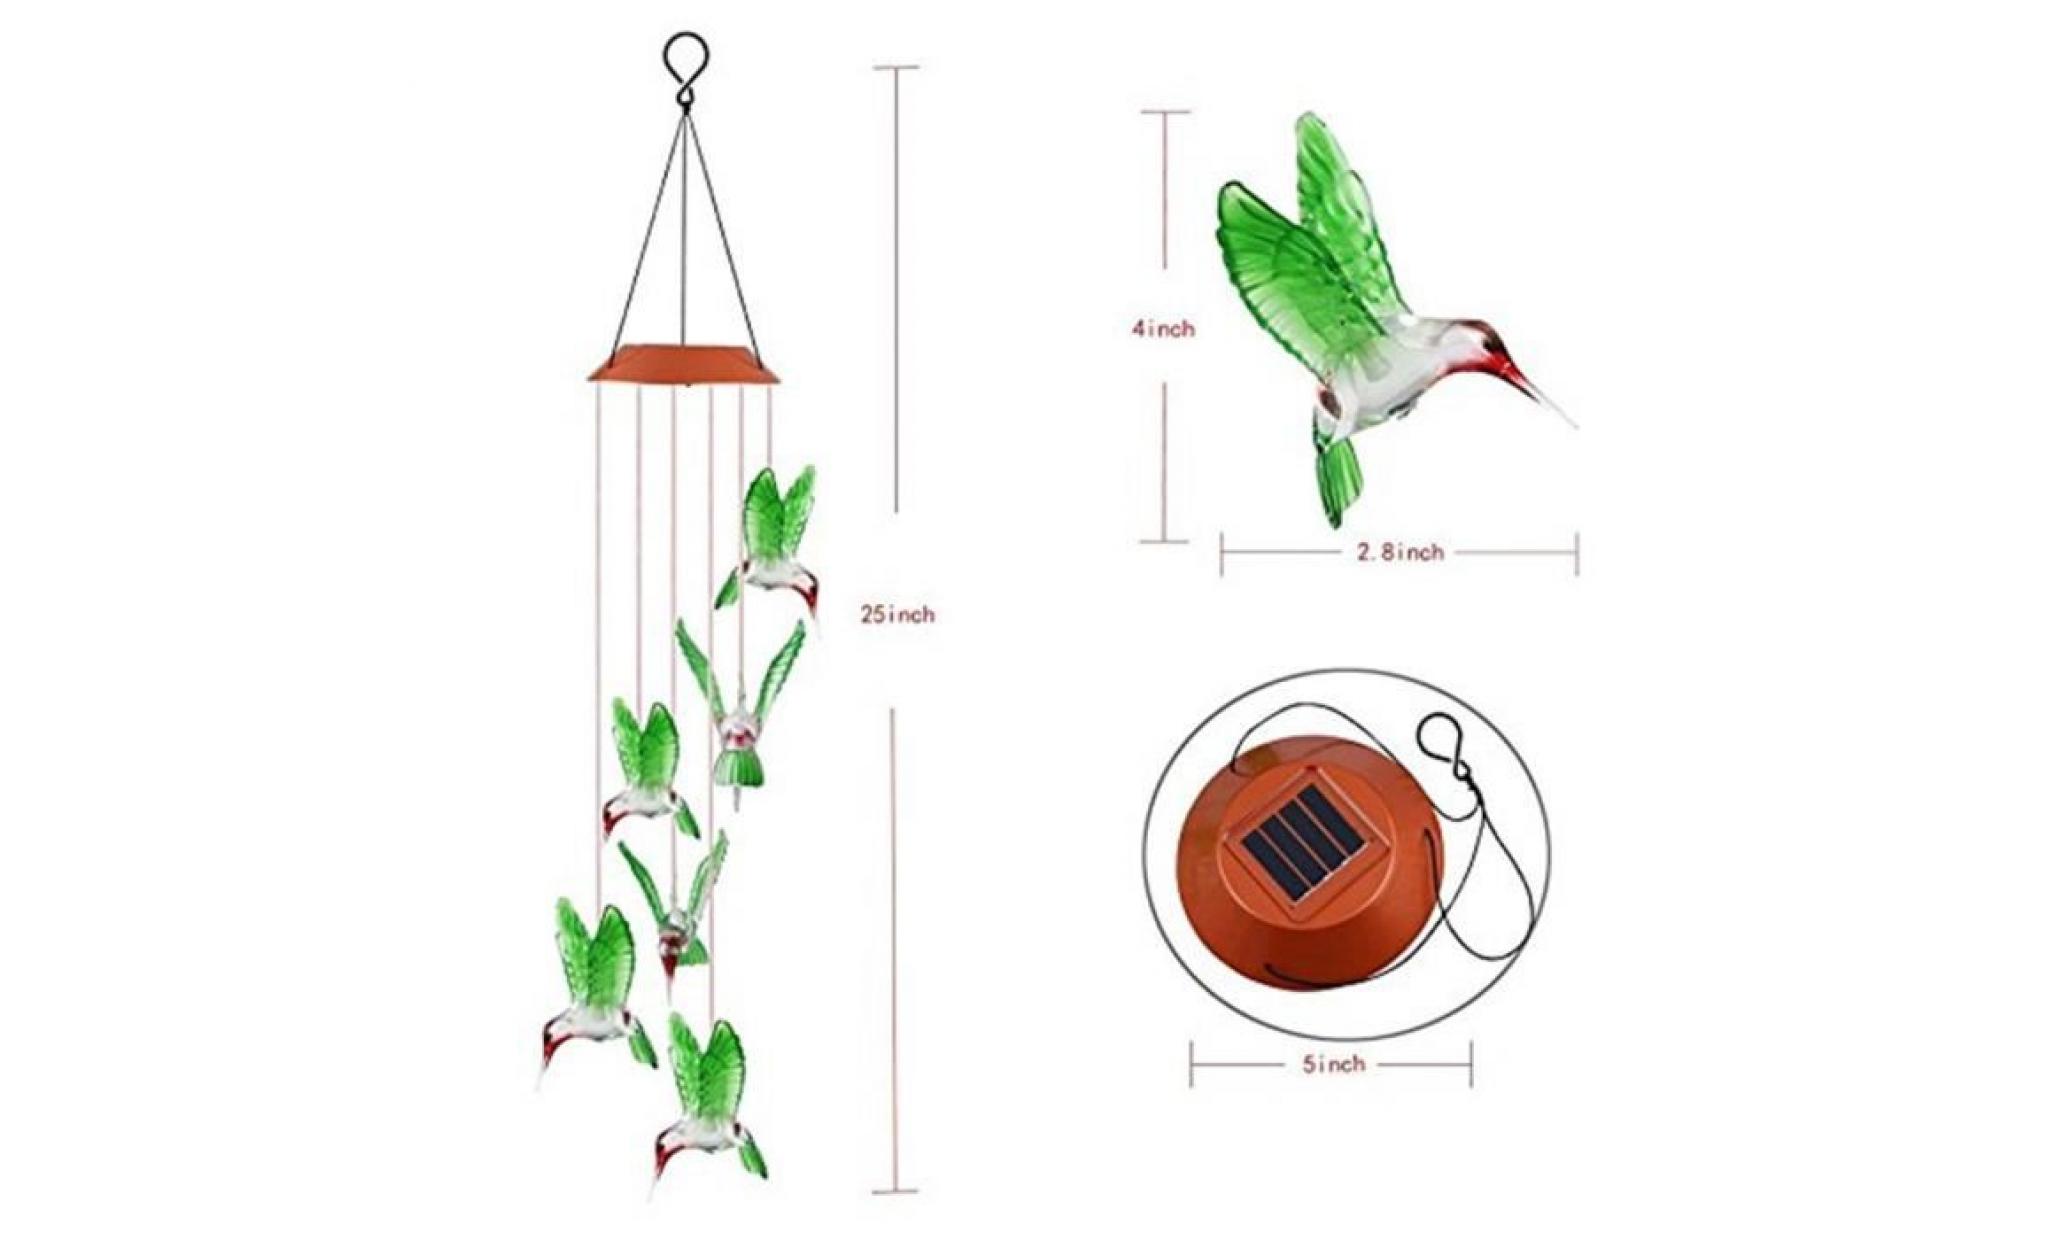 amyamyi@couleur changeant le vent solaire de colibri de carillon de vent de led pour l'éclairage de jardinage wong2217 pas cher